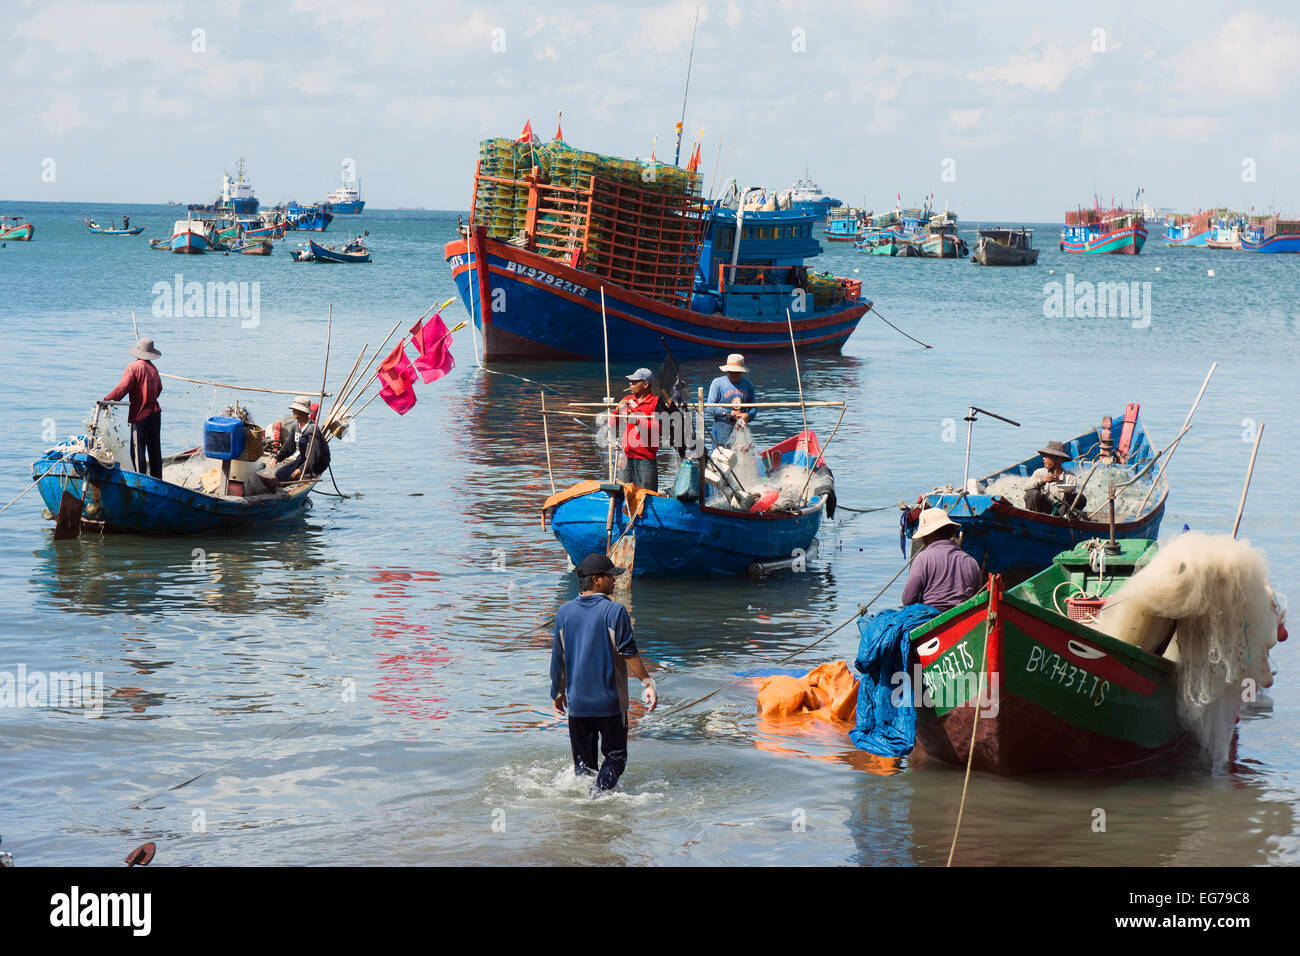 Vietnam, Vung Tau, fishermen sorting nets in harbor Stock Photo